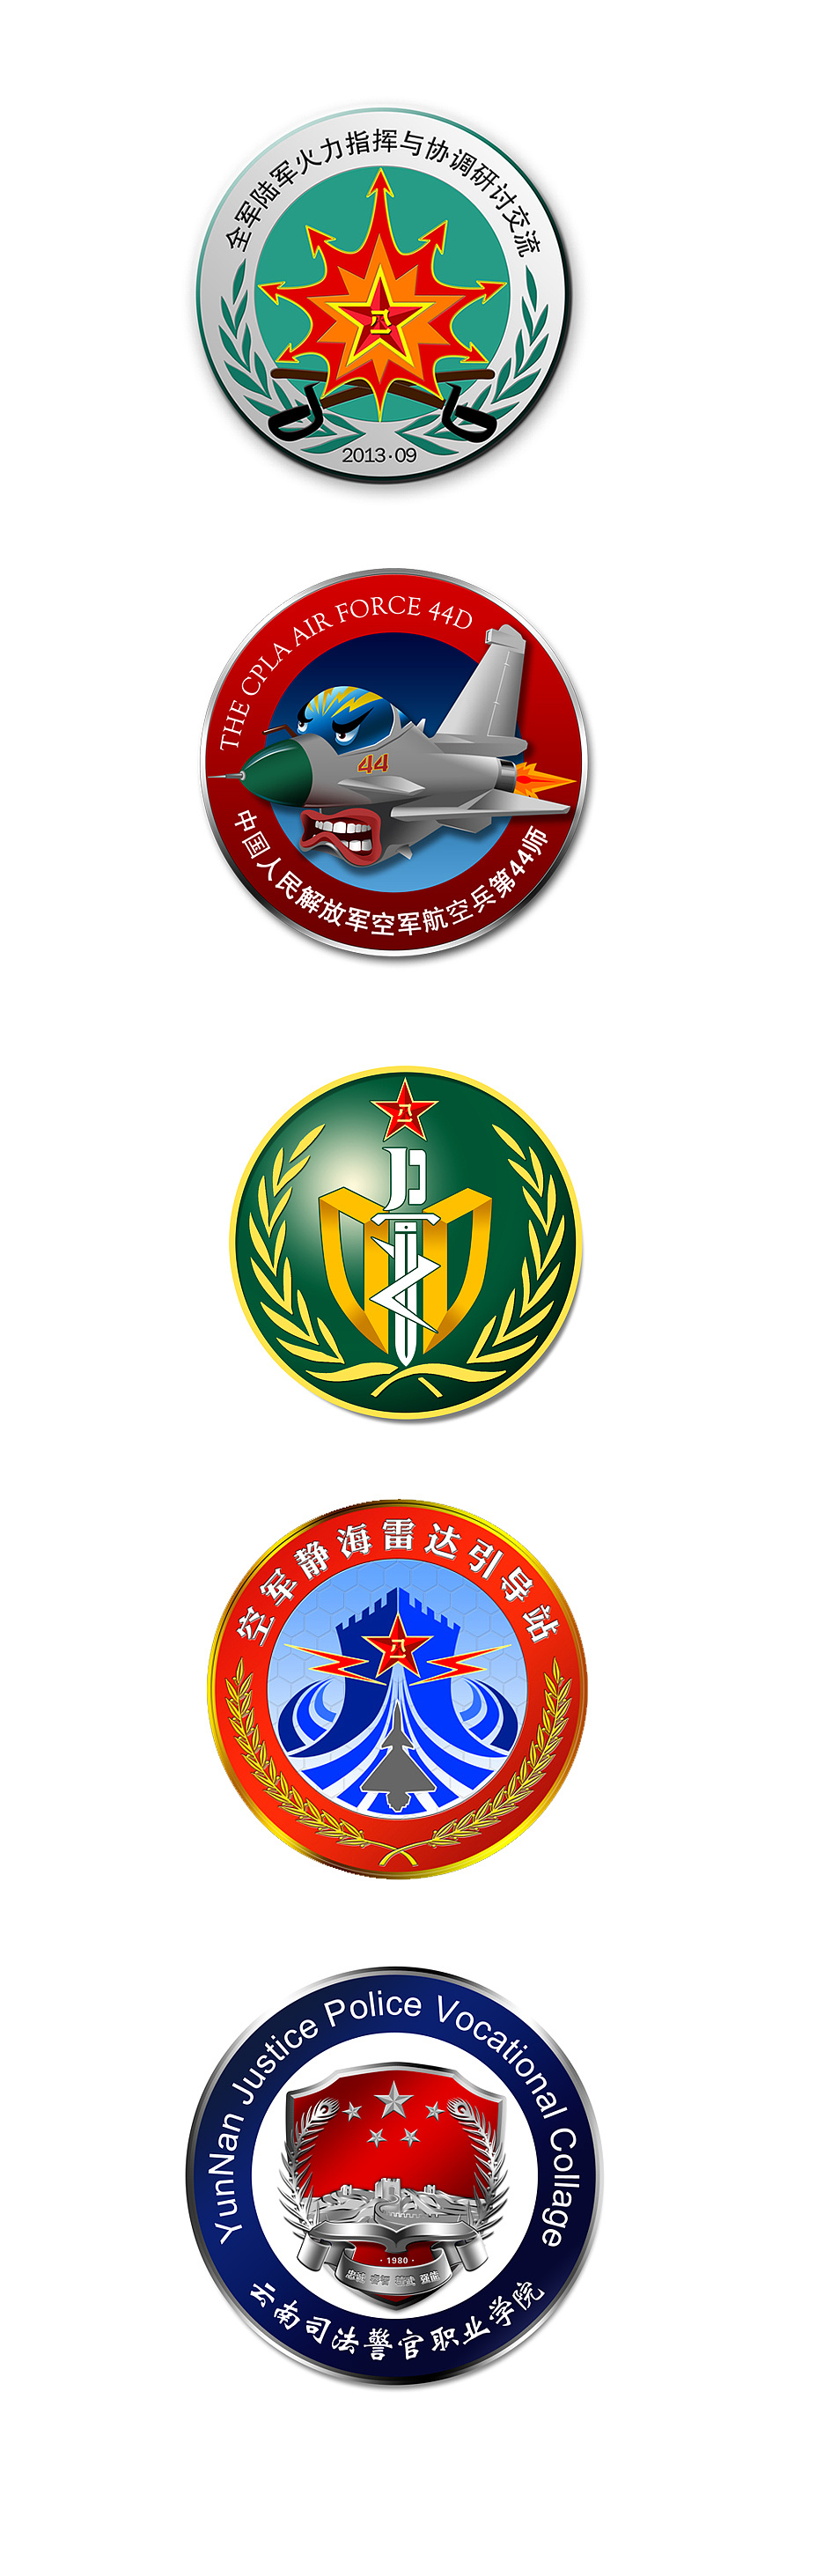 早期在部队的一组军事味很浓的logo设计